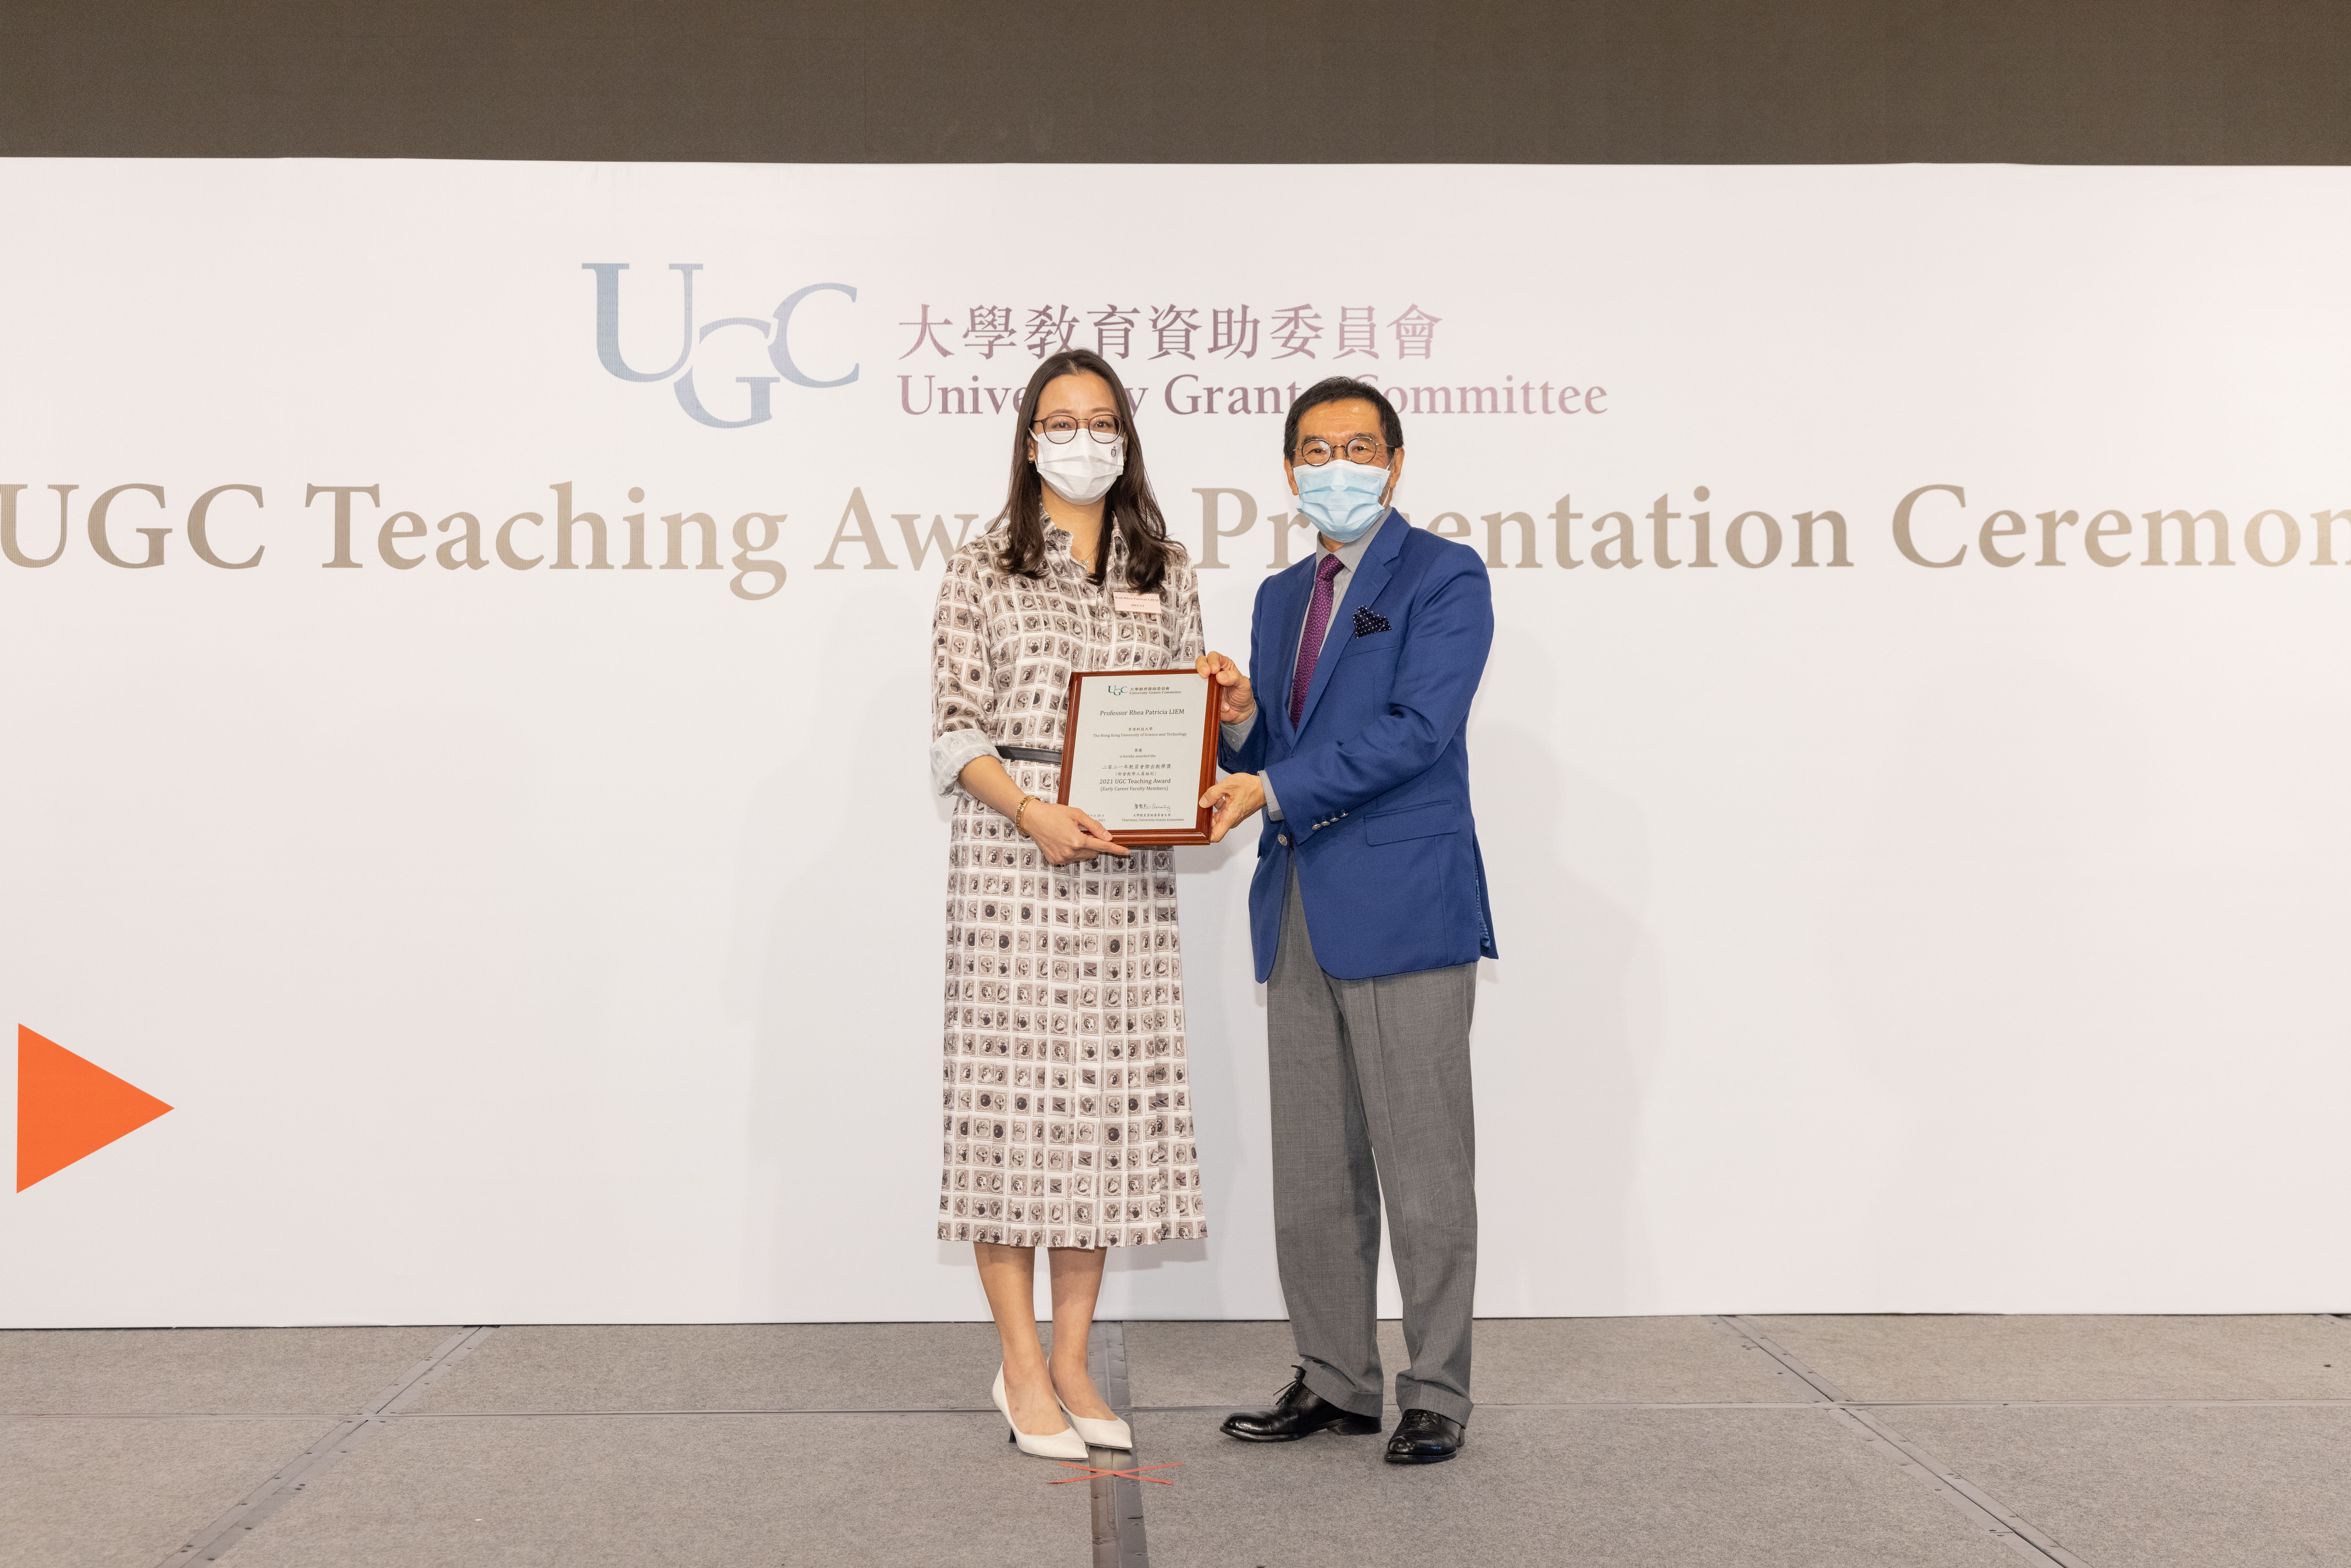 大学教育资助委员会（教资会）主席唐家成（右）颁发2021年教资会杰出教学奖（新晋教学人员组别）予Rhea LIEM教授。